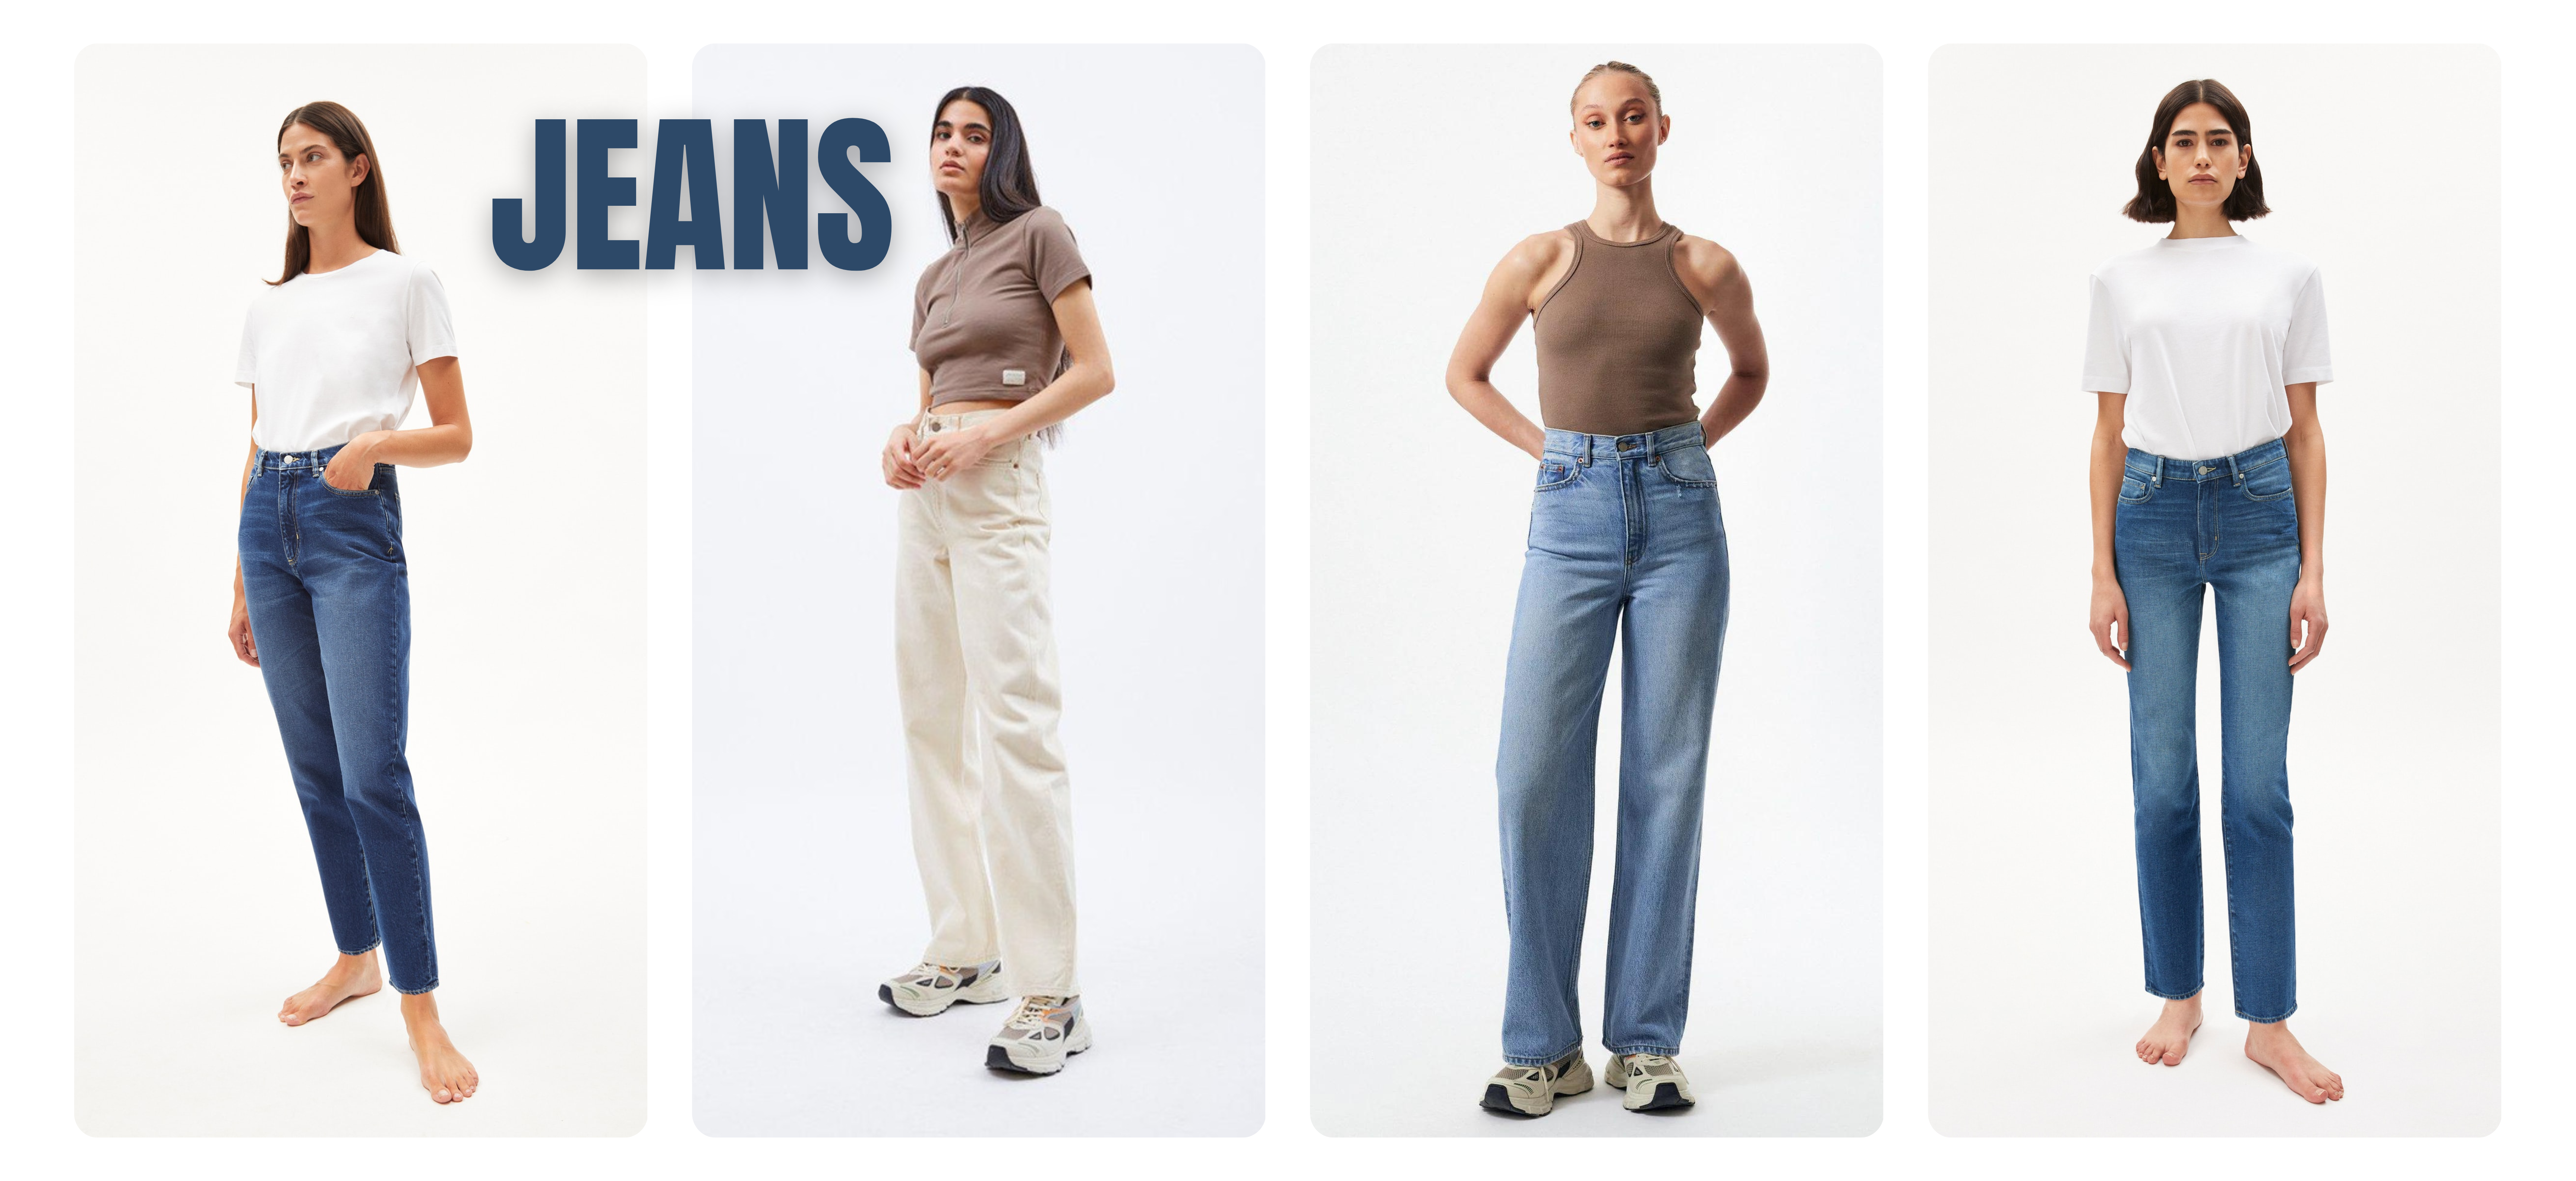 Damen Jeans